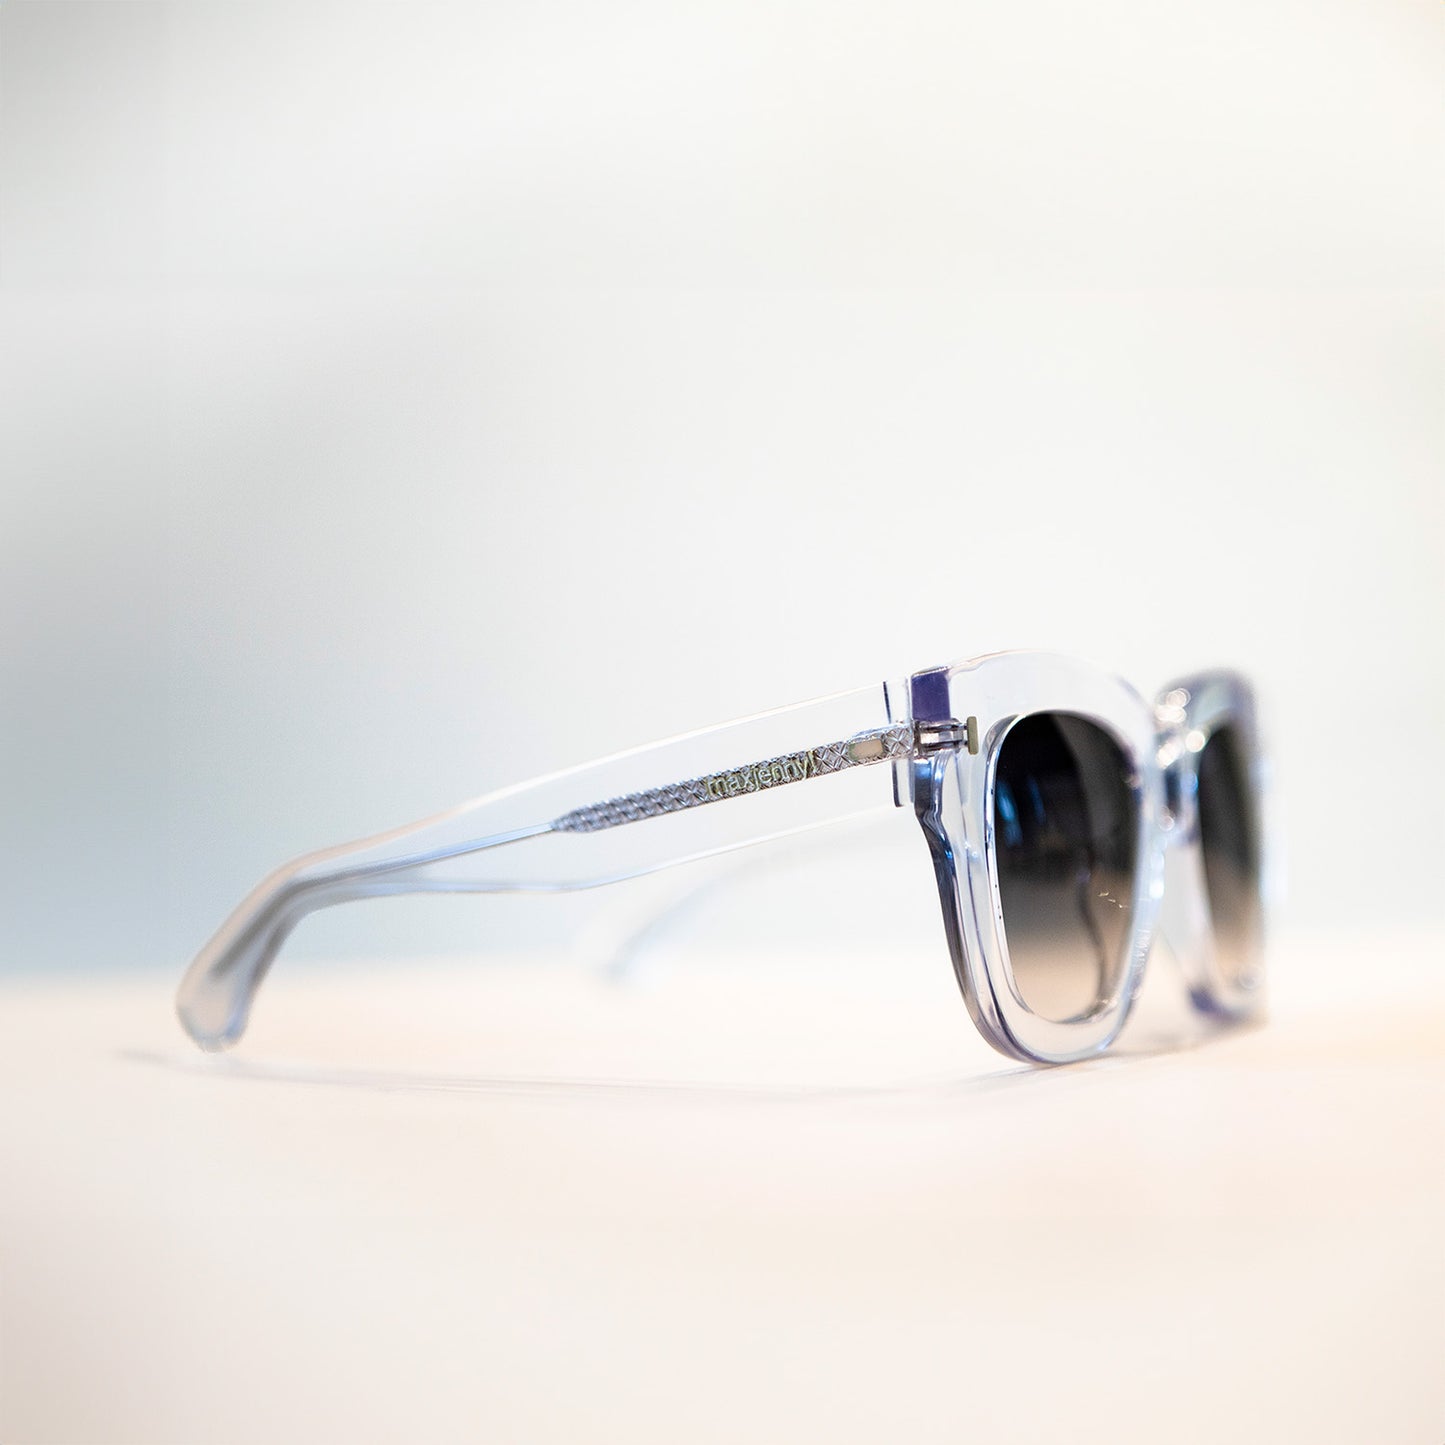 maxjenny! glasögon för sol & optik genomskinlig